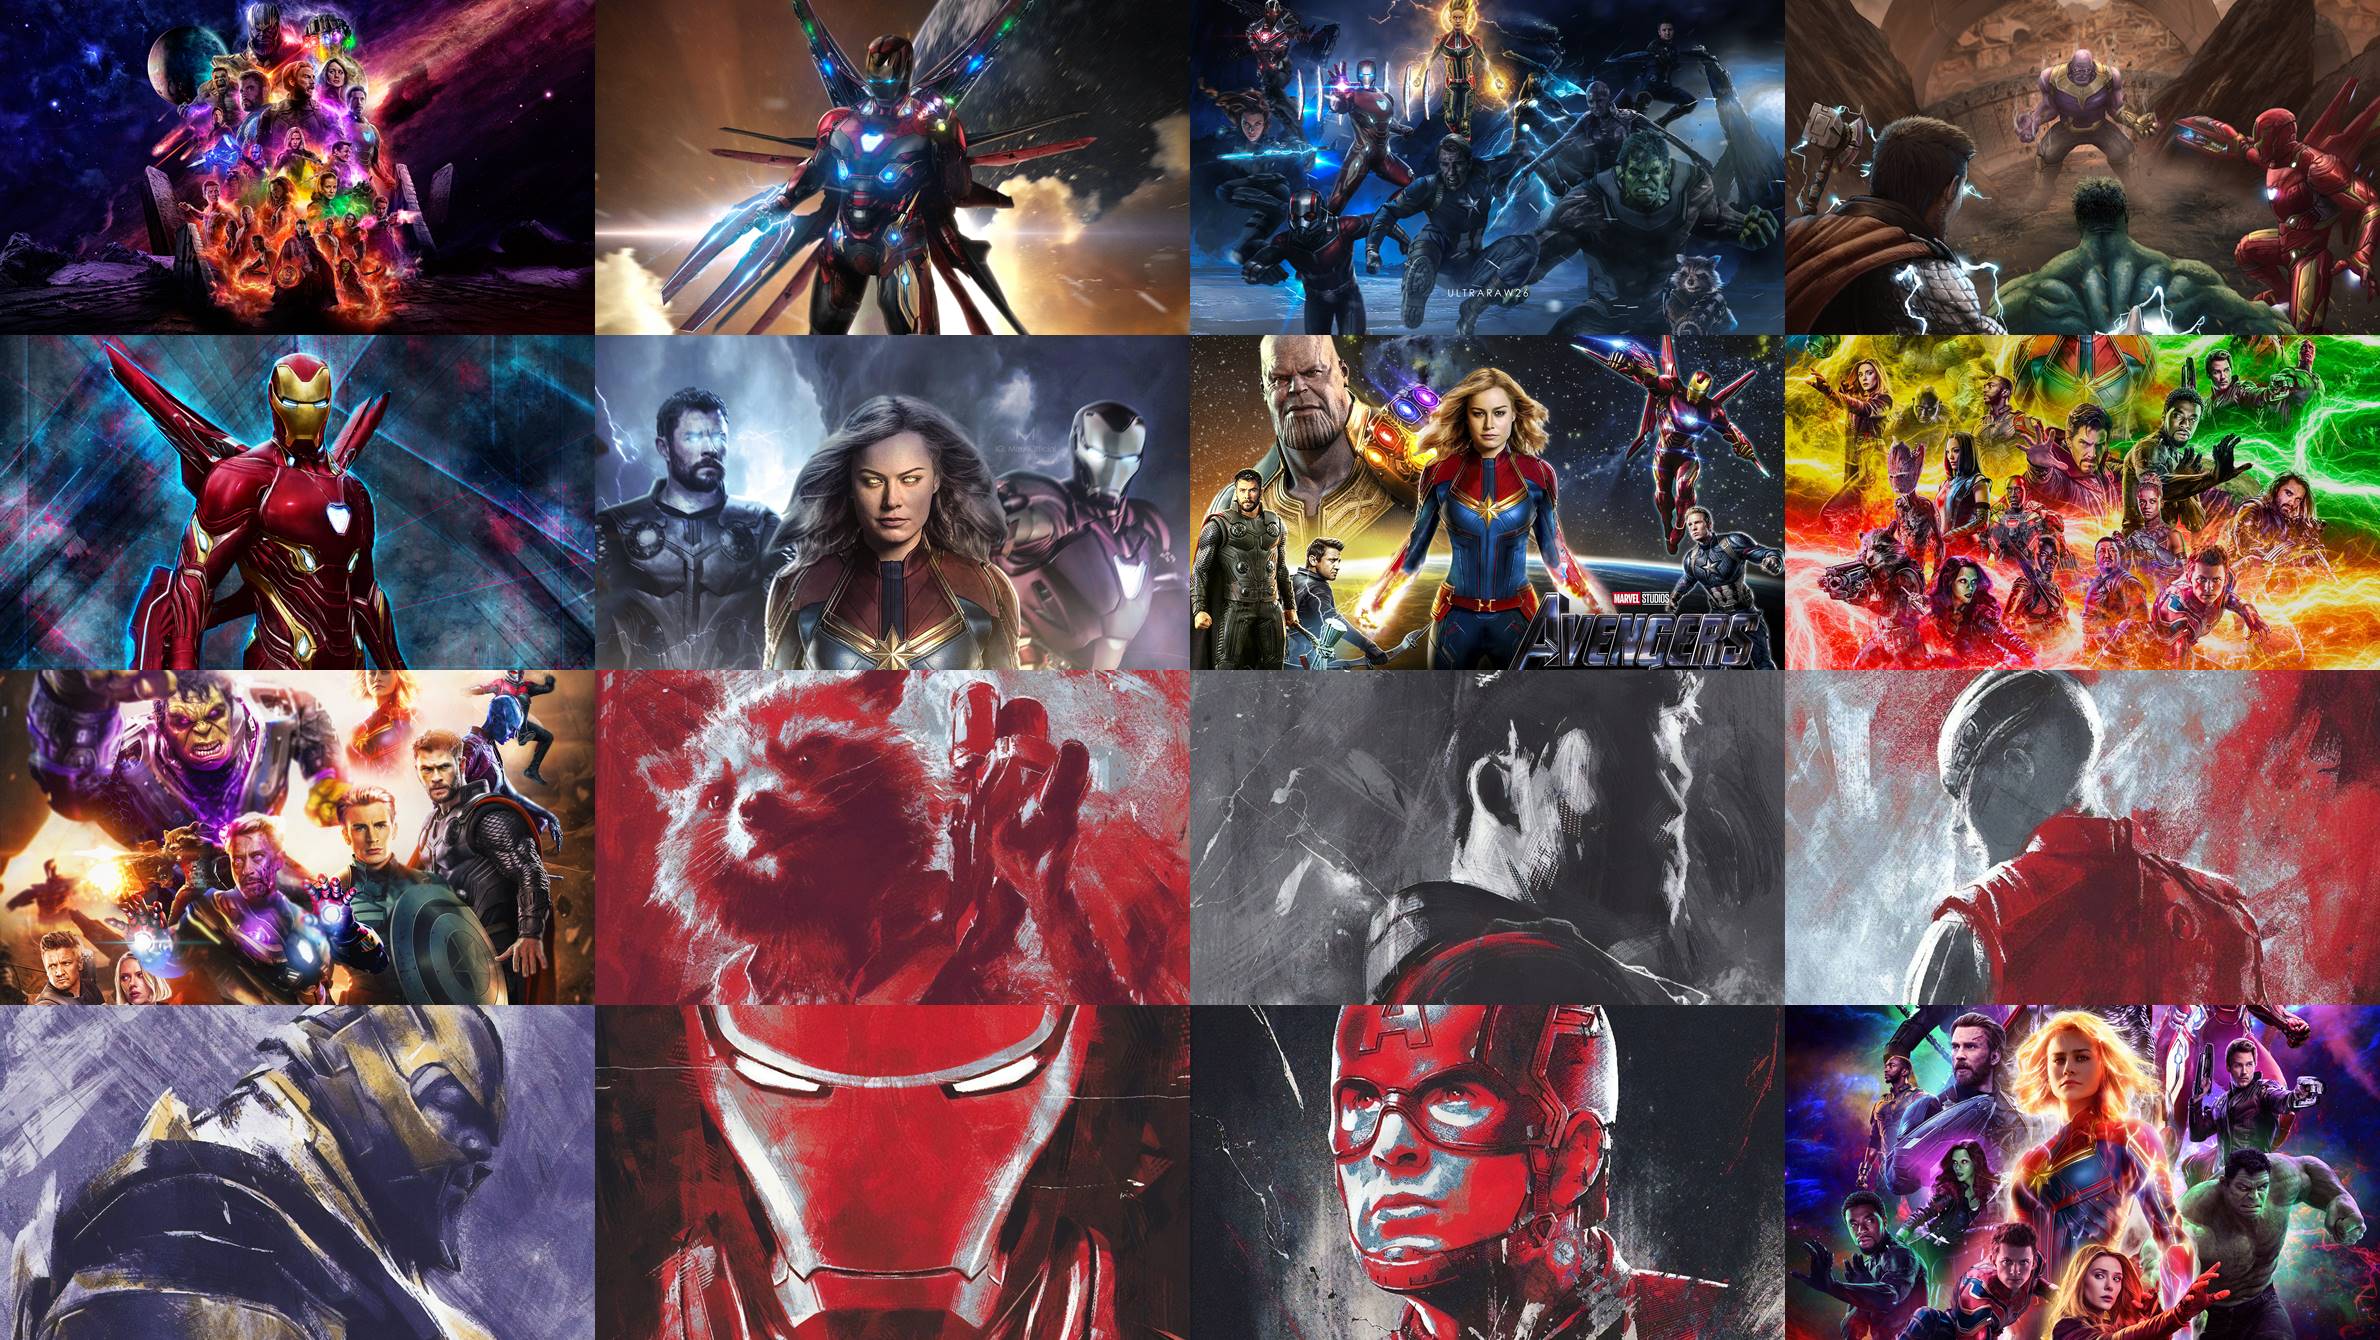 Best Avengers Endgame Wallpaper Full HD & 4K Ultra HD